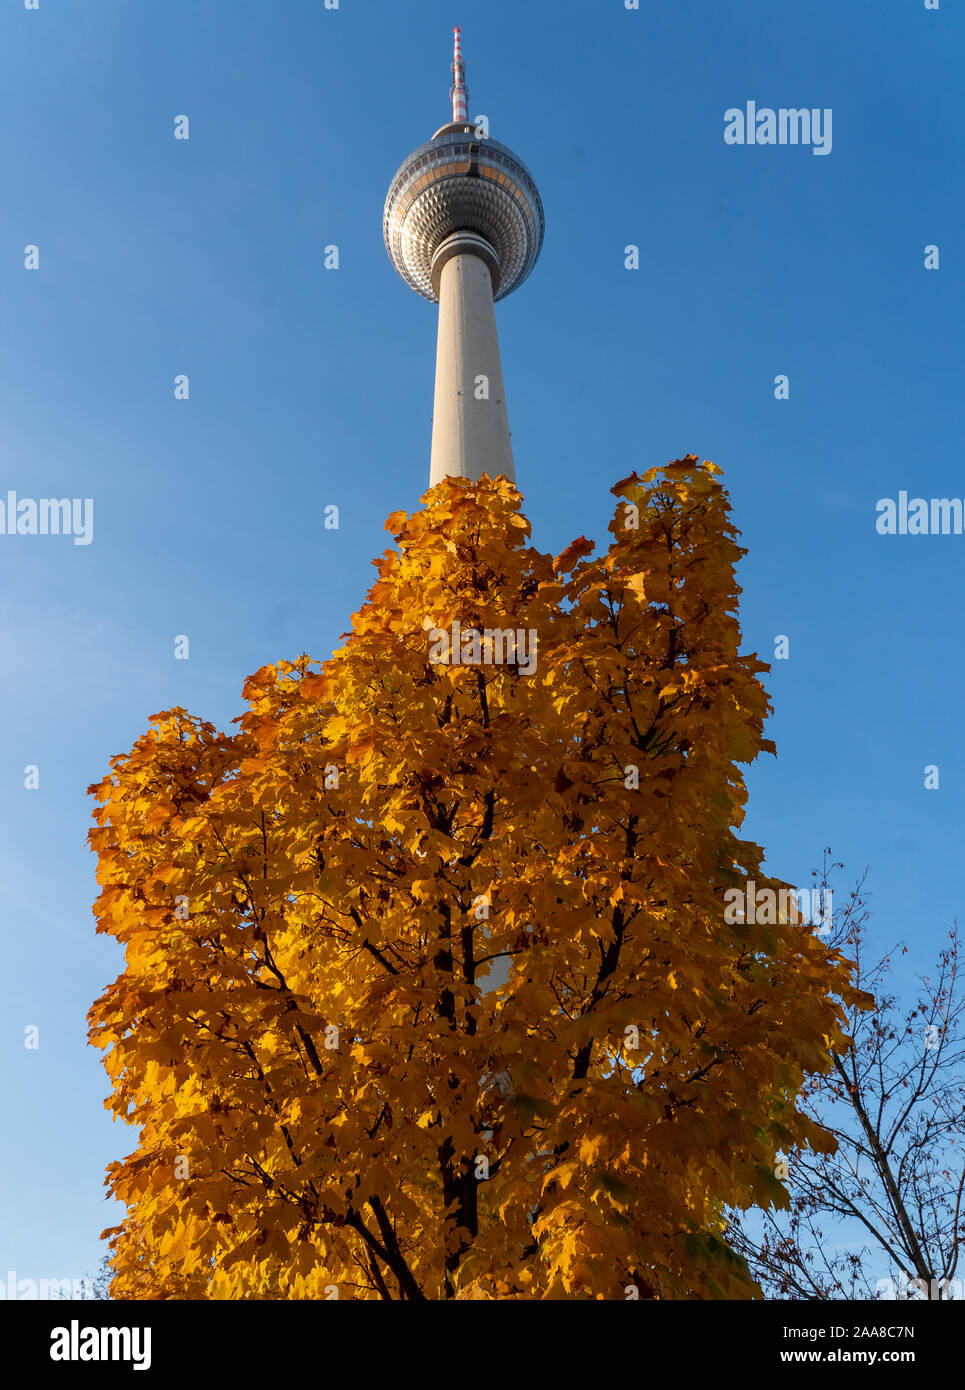 Il Berliner Fernsehturm (torre della televisione) di Berlino. Da una serie di foto di viaggio in Germania. Foto Data: giovedì 14 novembre, 2019. Foto: Roge Foto Stock